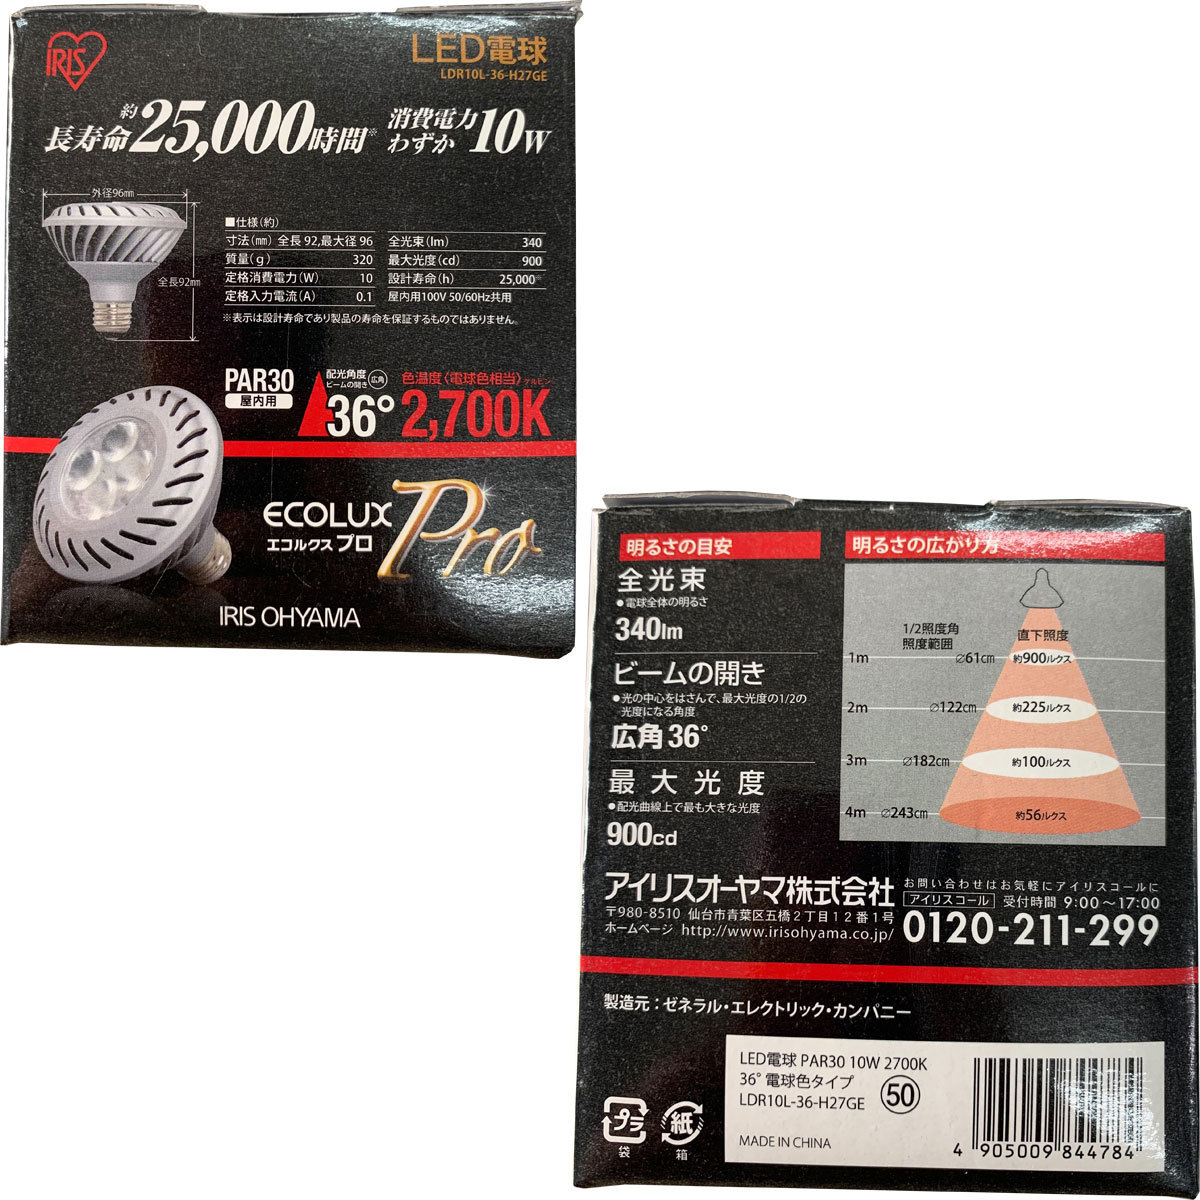 【送料無料】アイリスオーヤマ LED電球 PAR形 ビームランプ 電球色 E26口金 ビームランプ型 エコハイルクスプロ LDR10L-36-H27GE